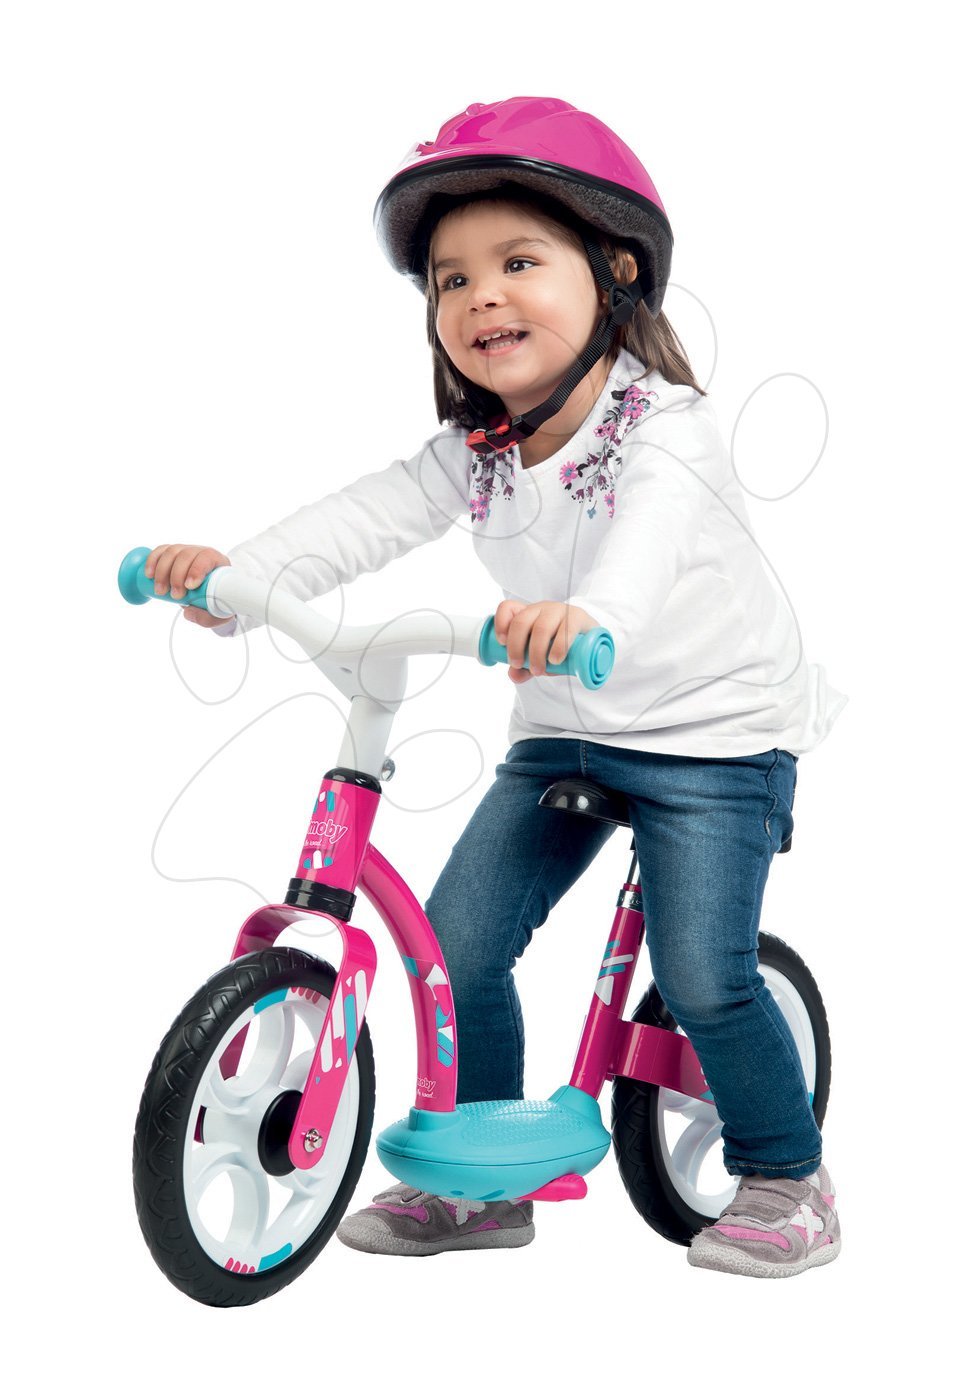 Odrážadlá od 18 mesiacov - Balančné odrážadlo Learning Bike Smoby s nastaviteľnou výškou sedadla bielo-ružové od 24 mes